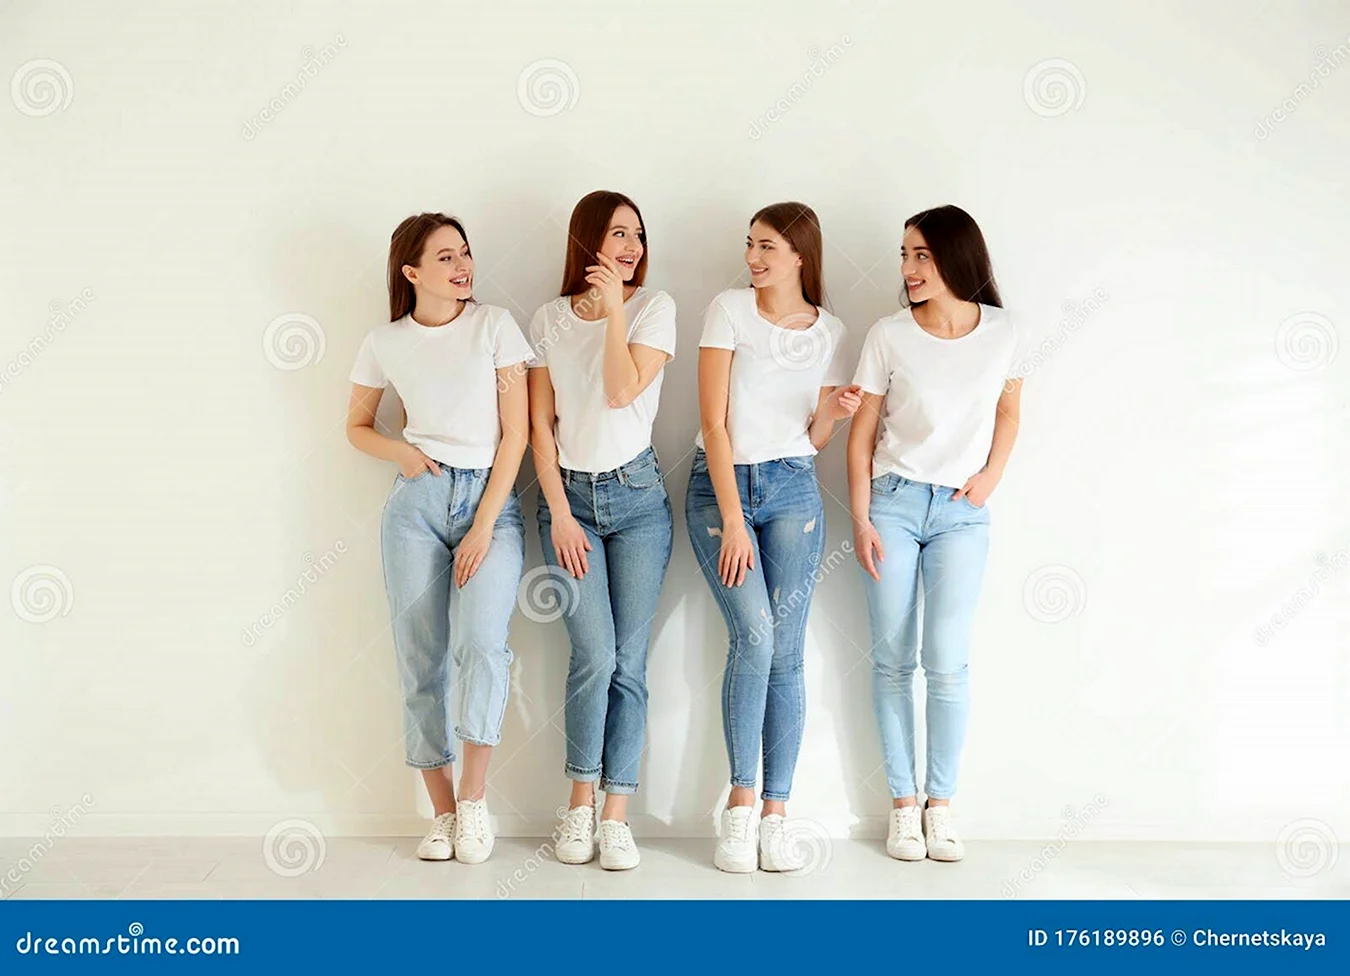 Групповая фотосессия в джинсах и футболках Минимализм